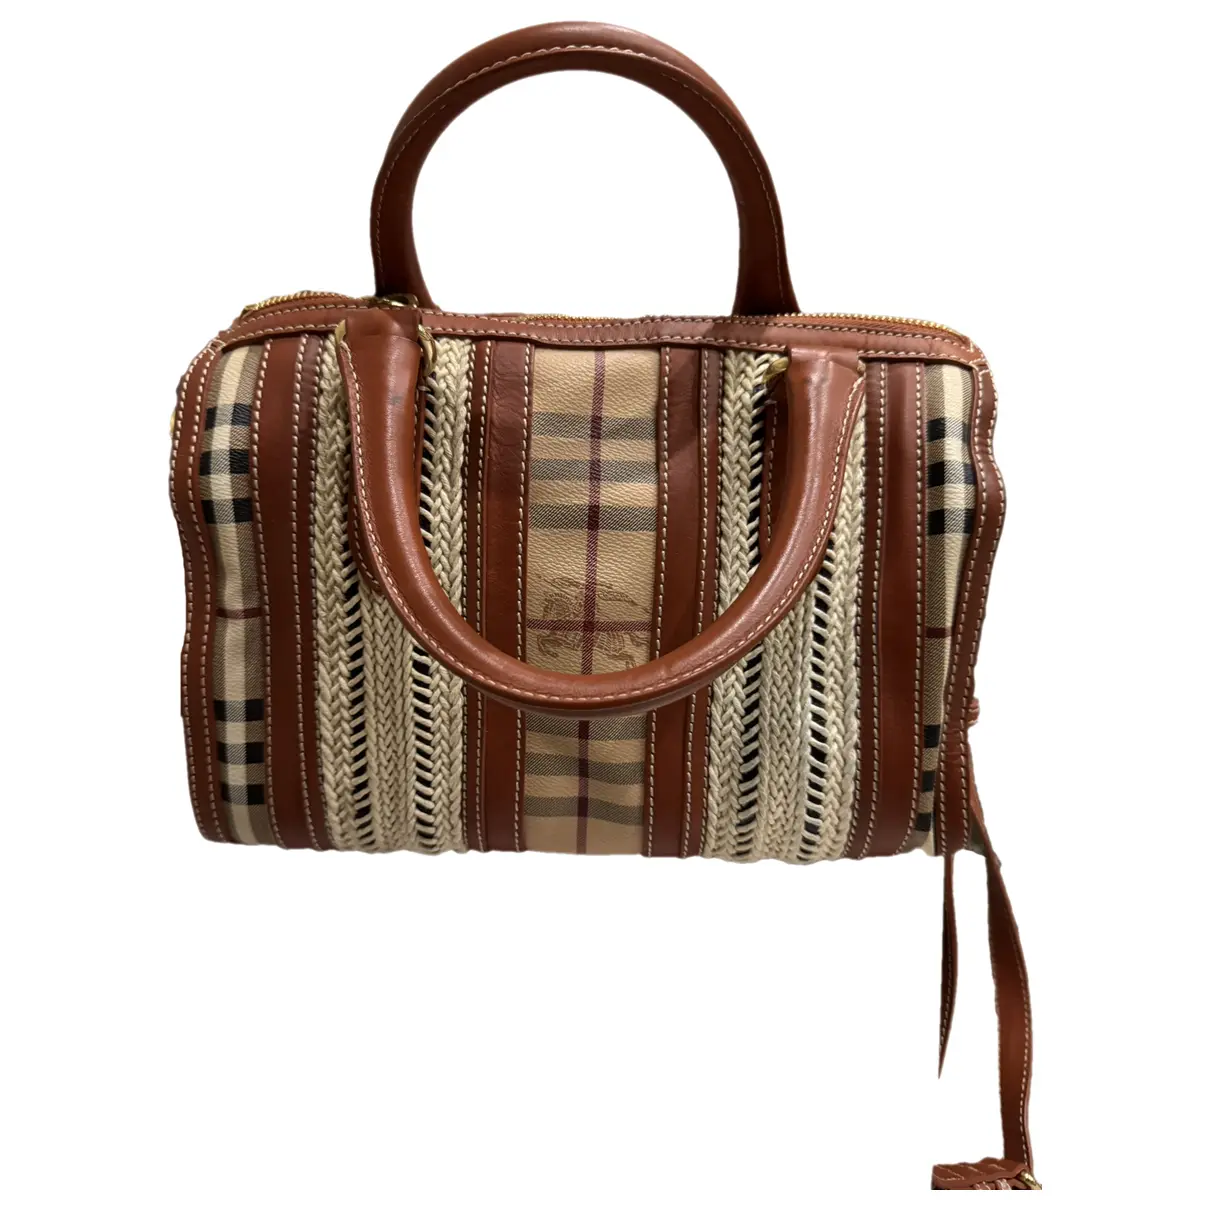 The Barrel cloth handbag